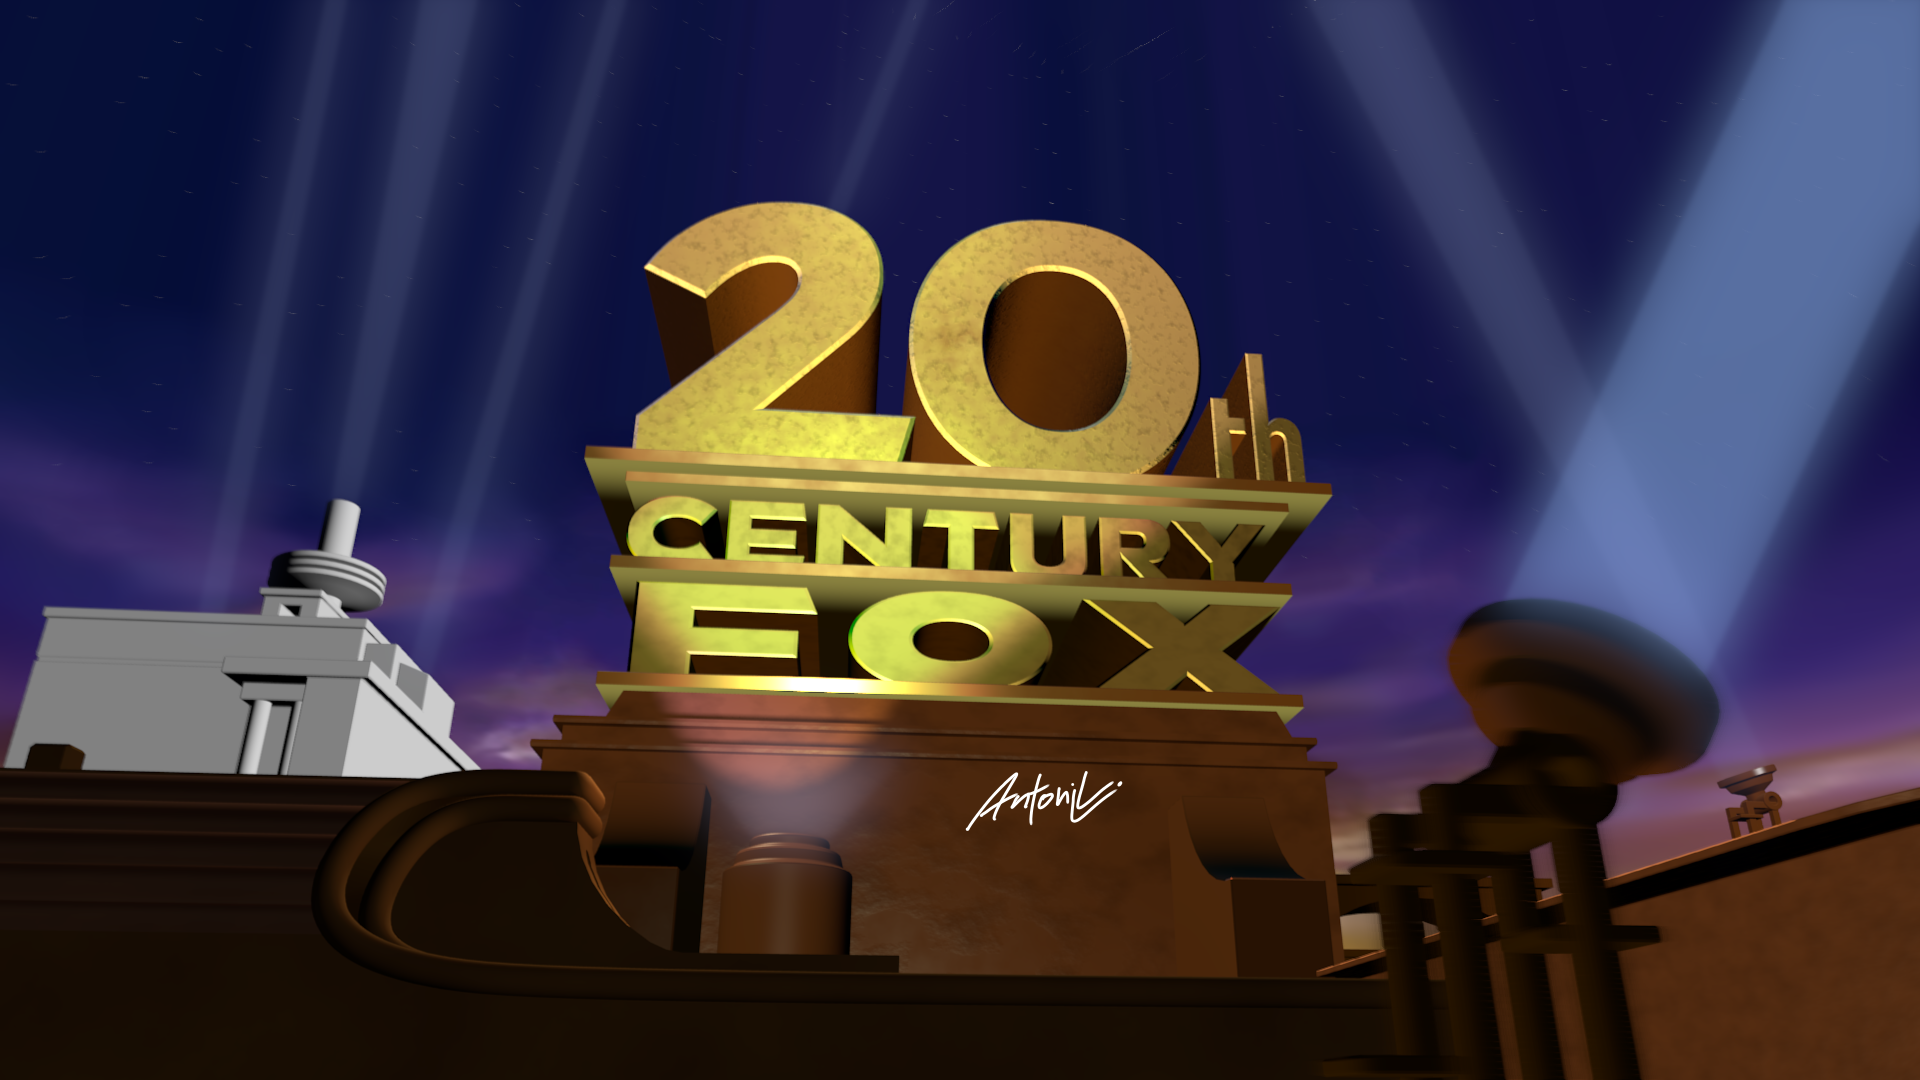 20th Century Fox Logo Icepony64